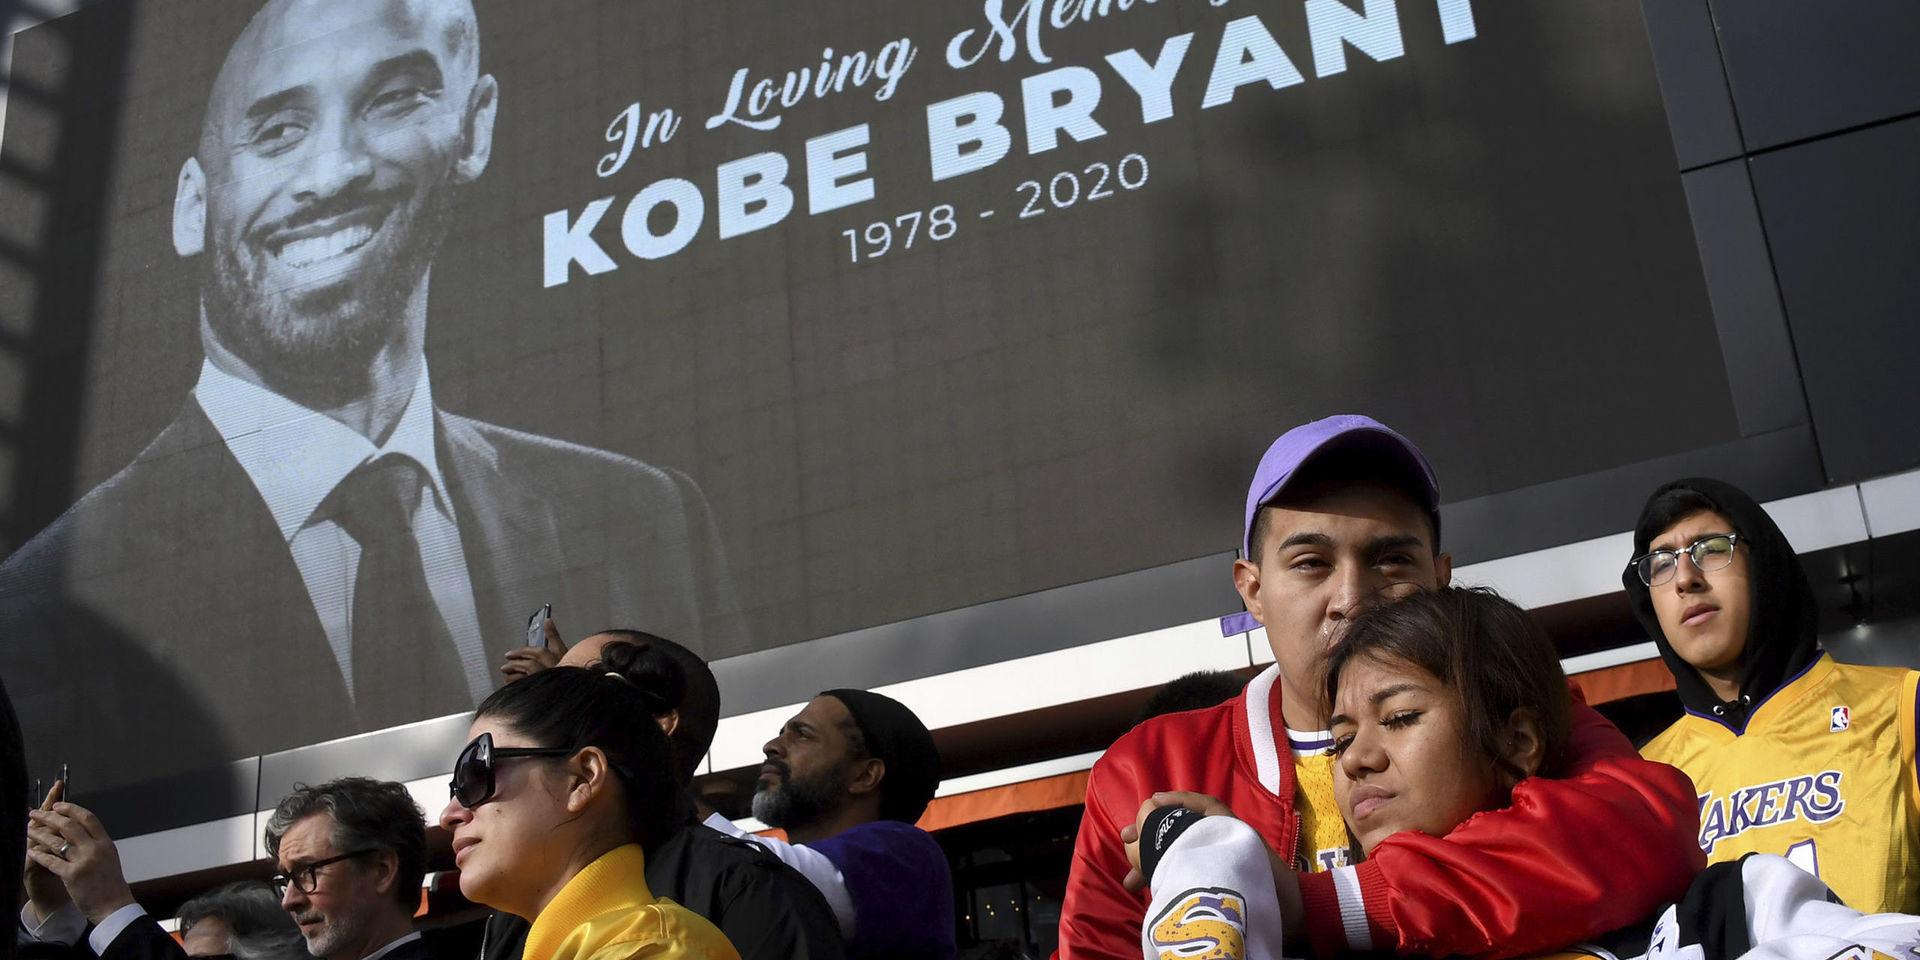 Många sörjer Kobe Bryant efter helikopterkraschen i Los Angeles utanför Staples Center, LA Lakers hemmaarena där Bryant tillbringade sin karriär.